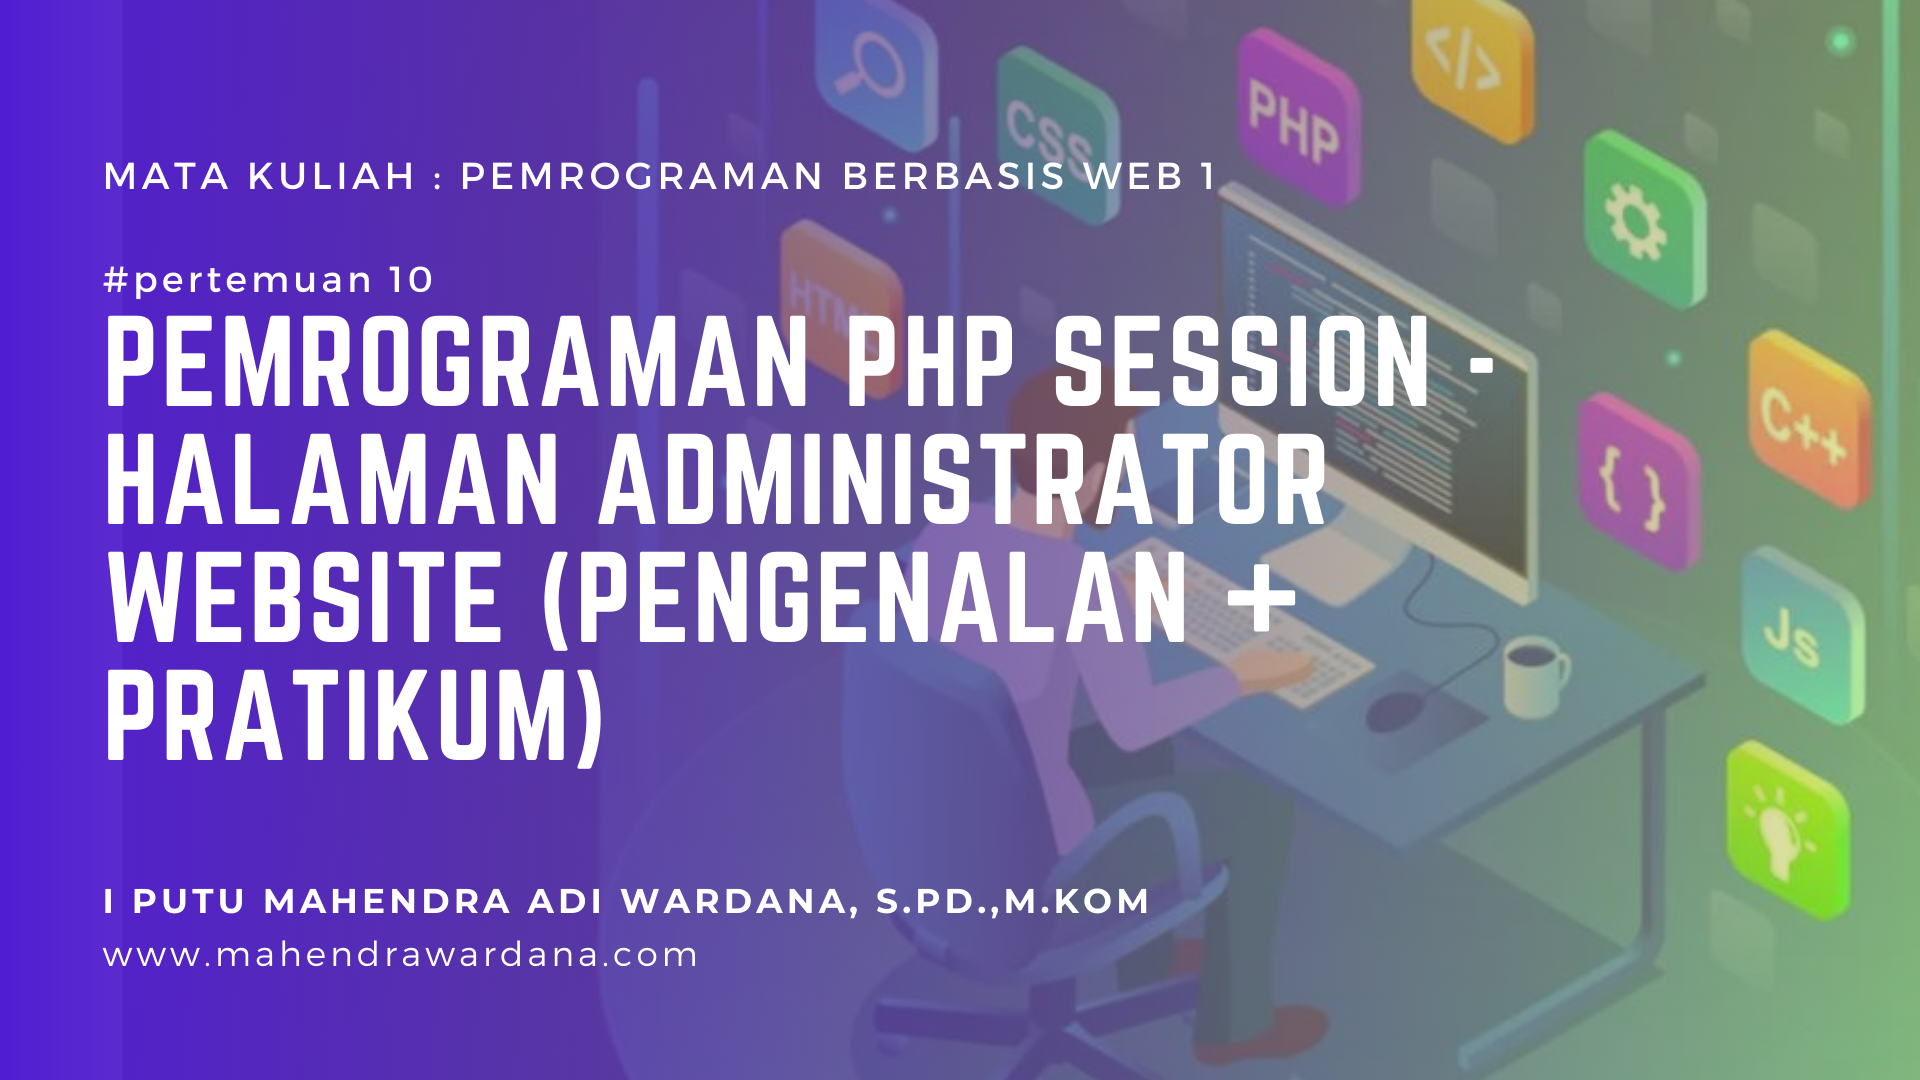 Pertemuan 10 - Pemrograman PHP Session - Halaman Administrator Website (Pengenalan + Pratikum)